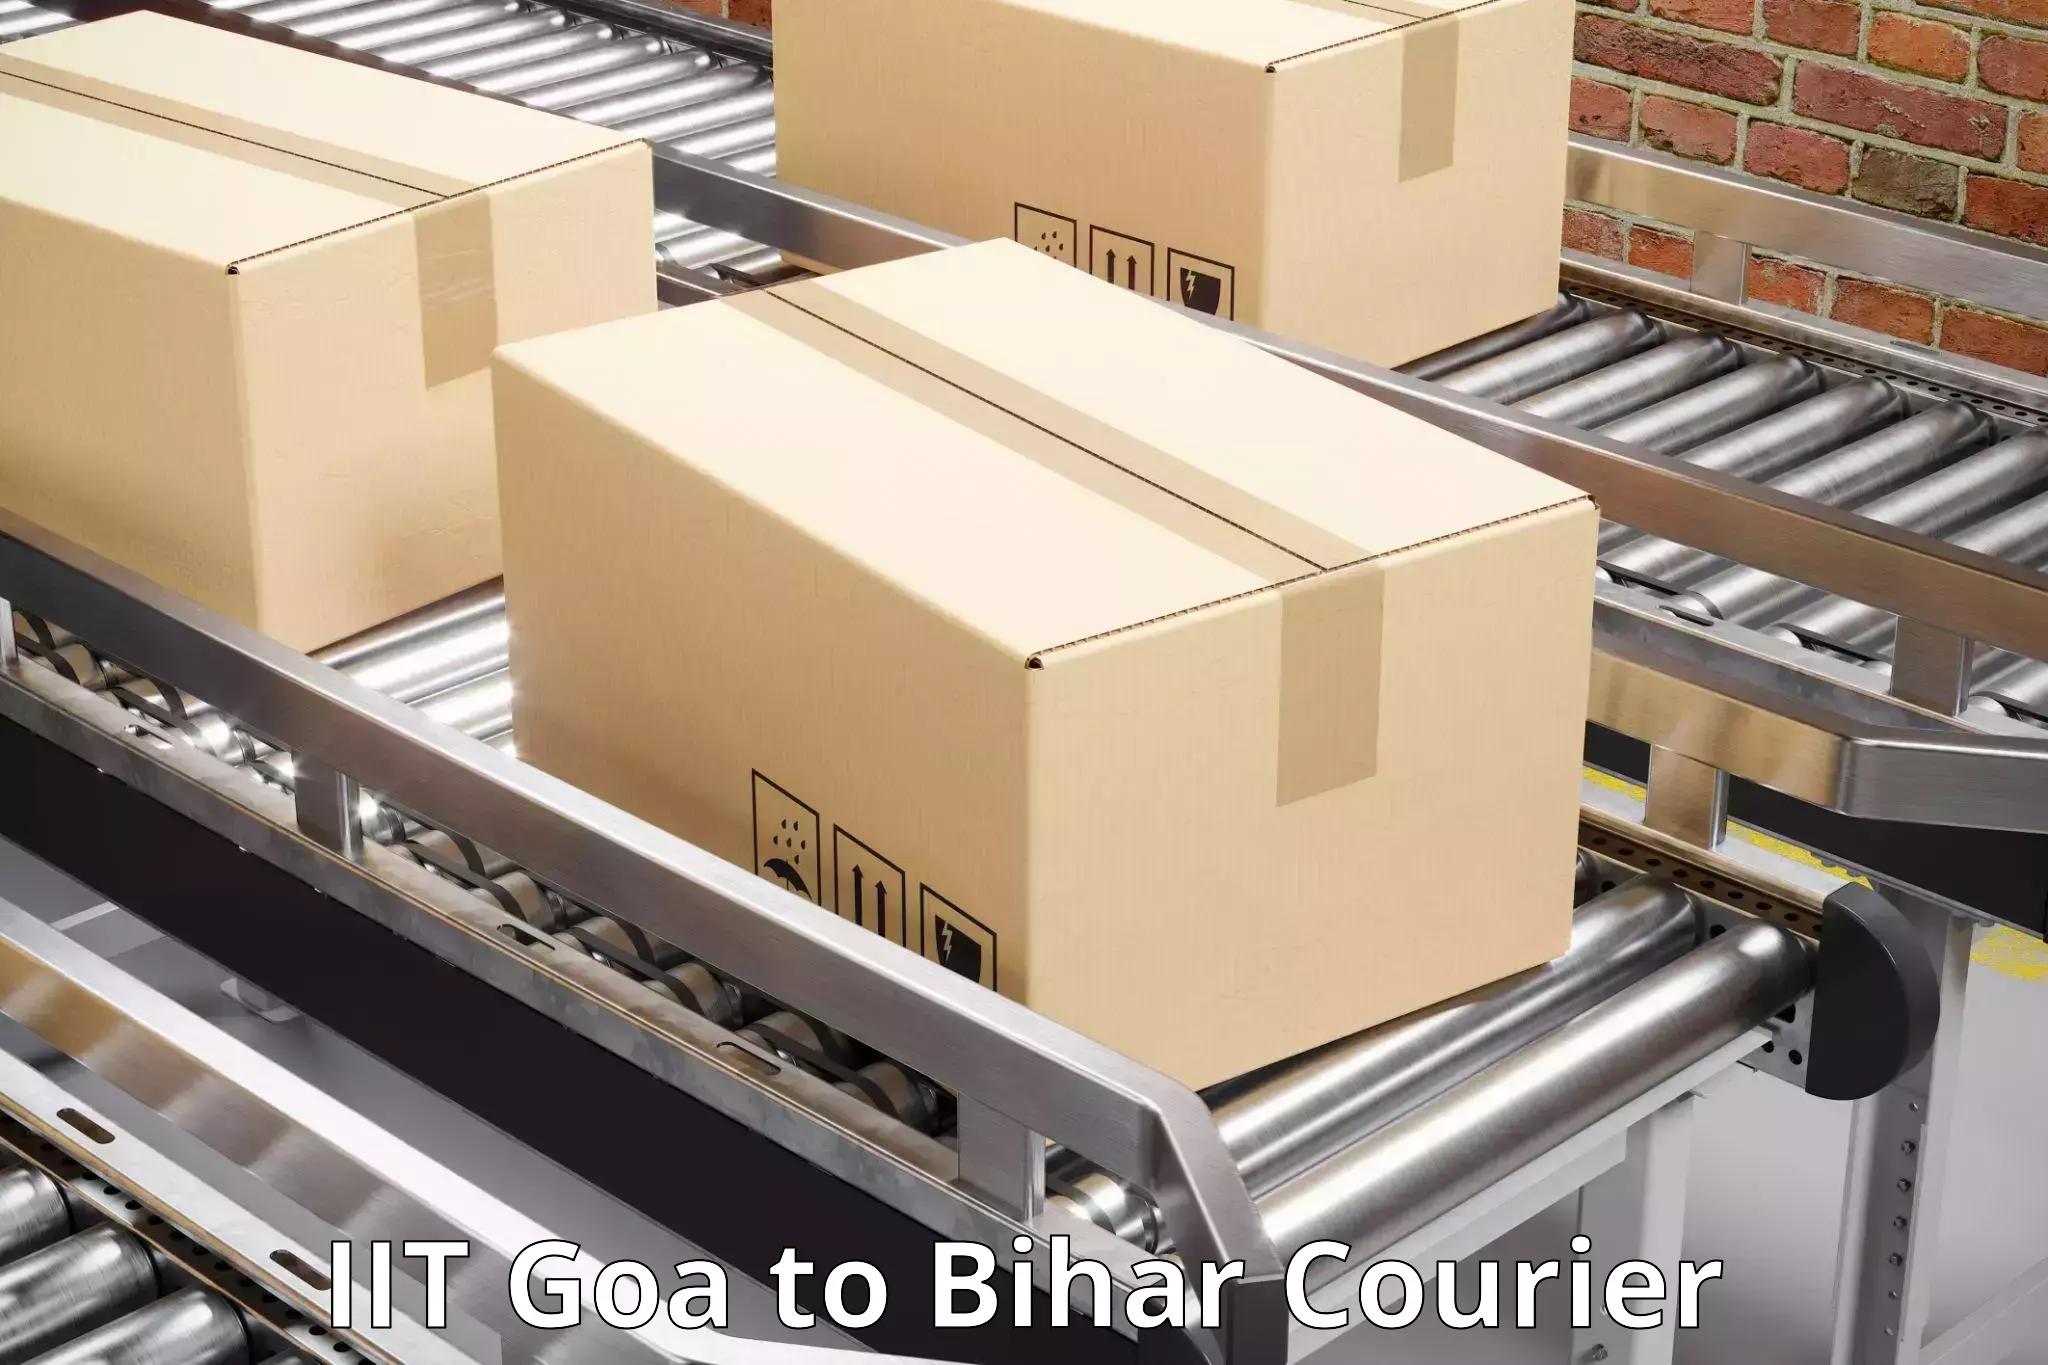 Global logistics network IIT Goa to Banka